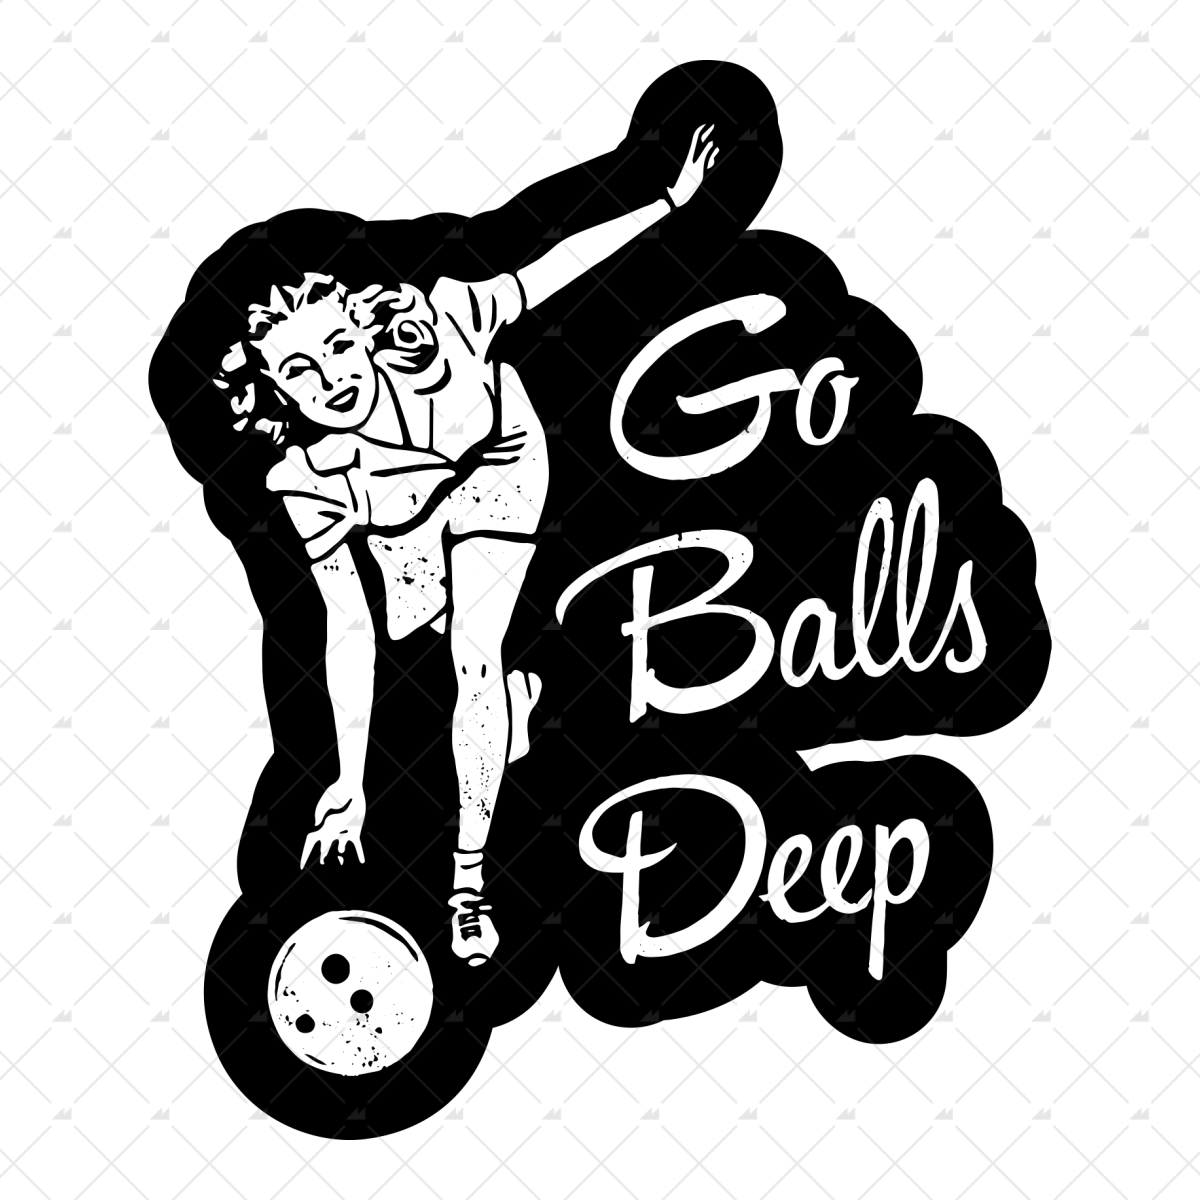 Go Balls Deep - Sticker